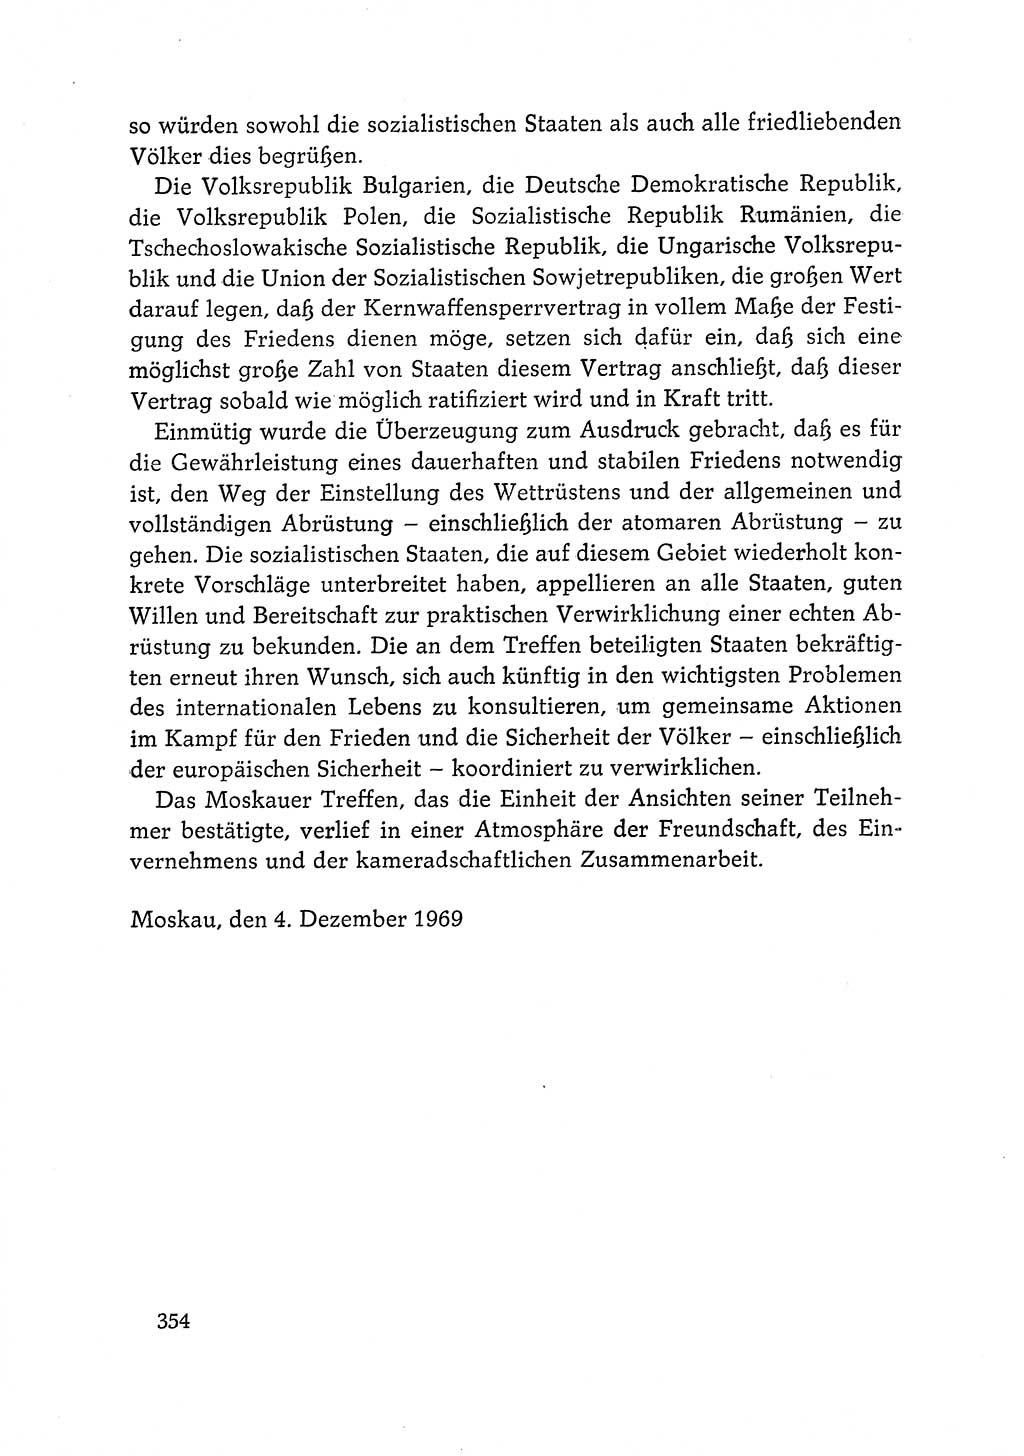 Dokumente der Sozialistischen Einheitspartei Deutschlands (SED) [Deutsche Demokratische Republik (DDR)] 1968-1969, Seite 354 (Dok. SED DDR 1968-1969, S. 354)